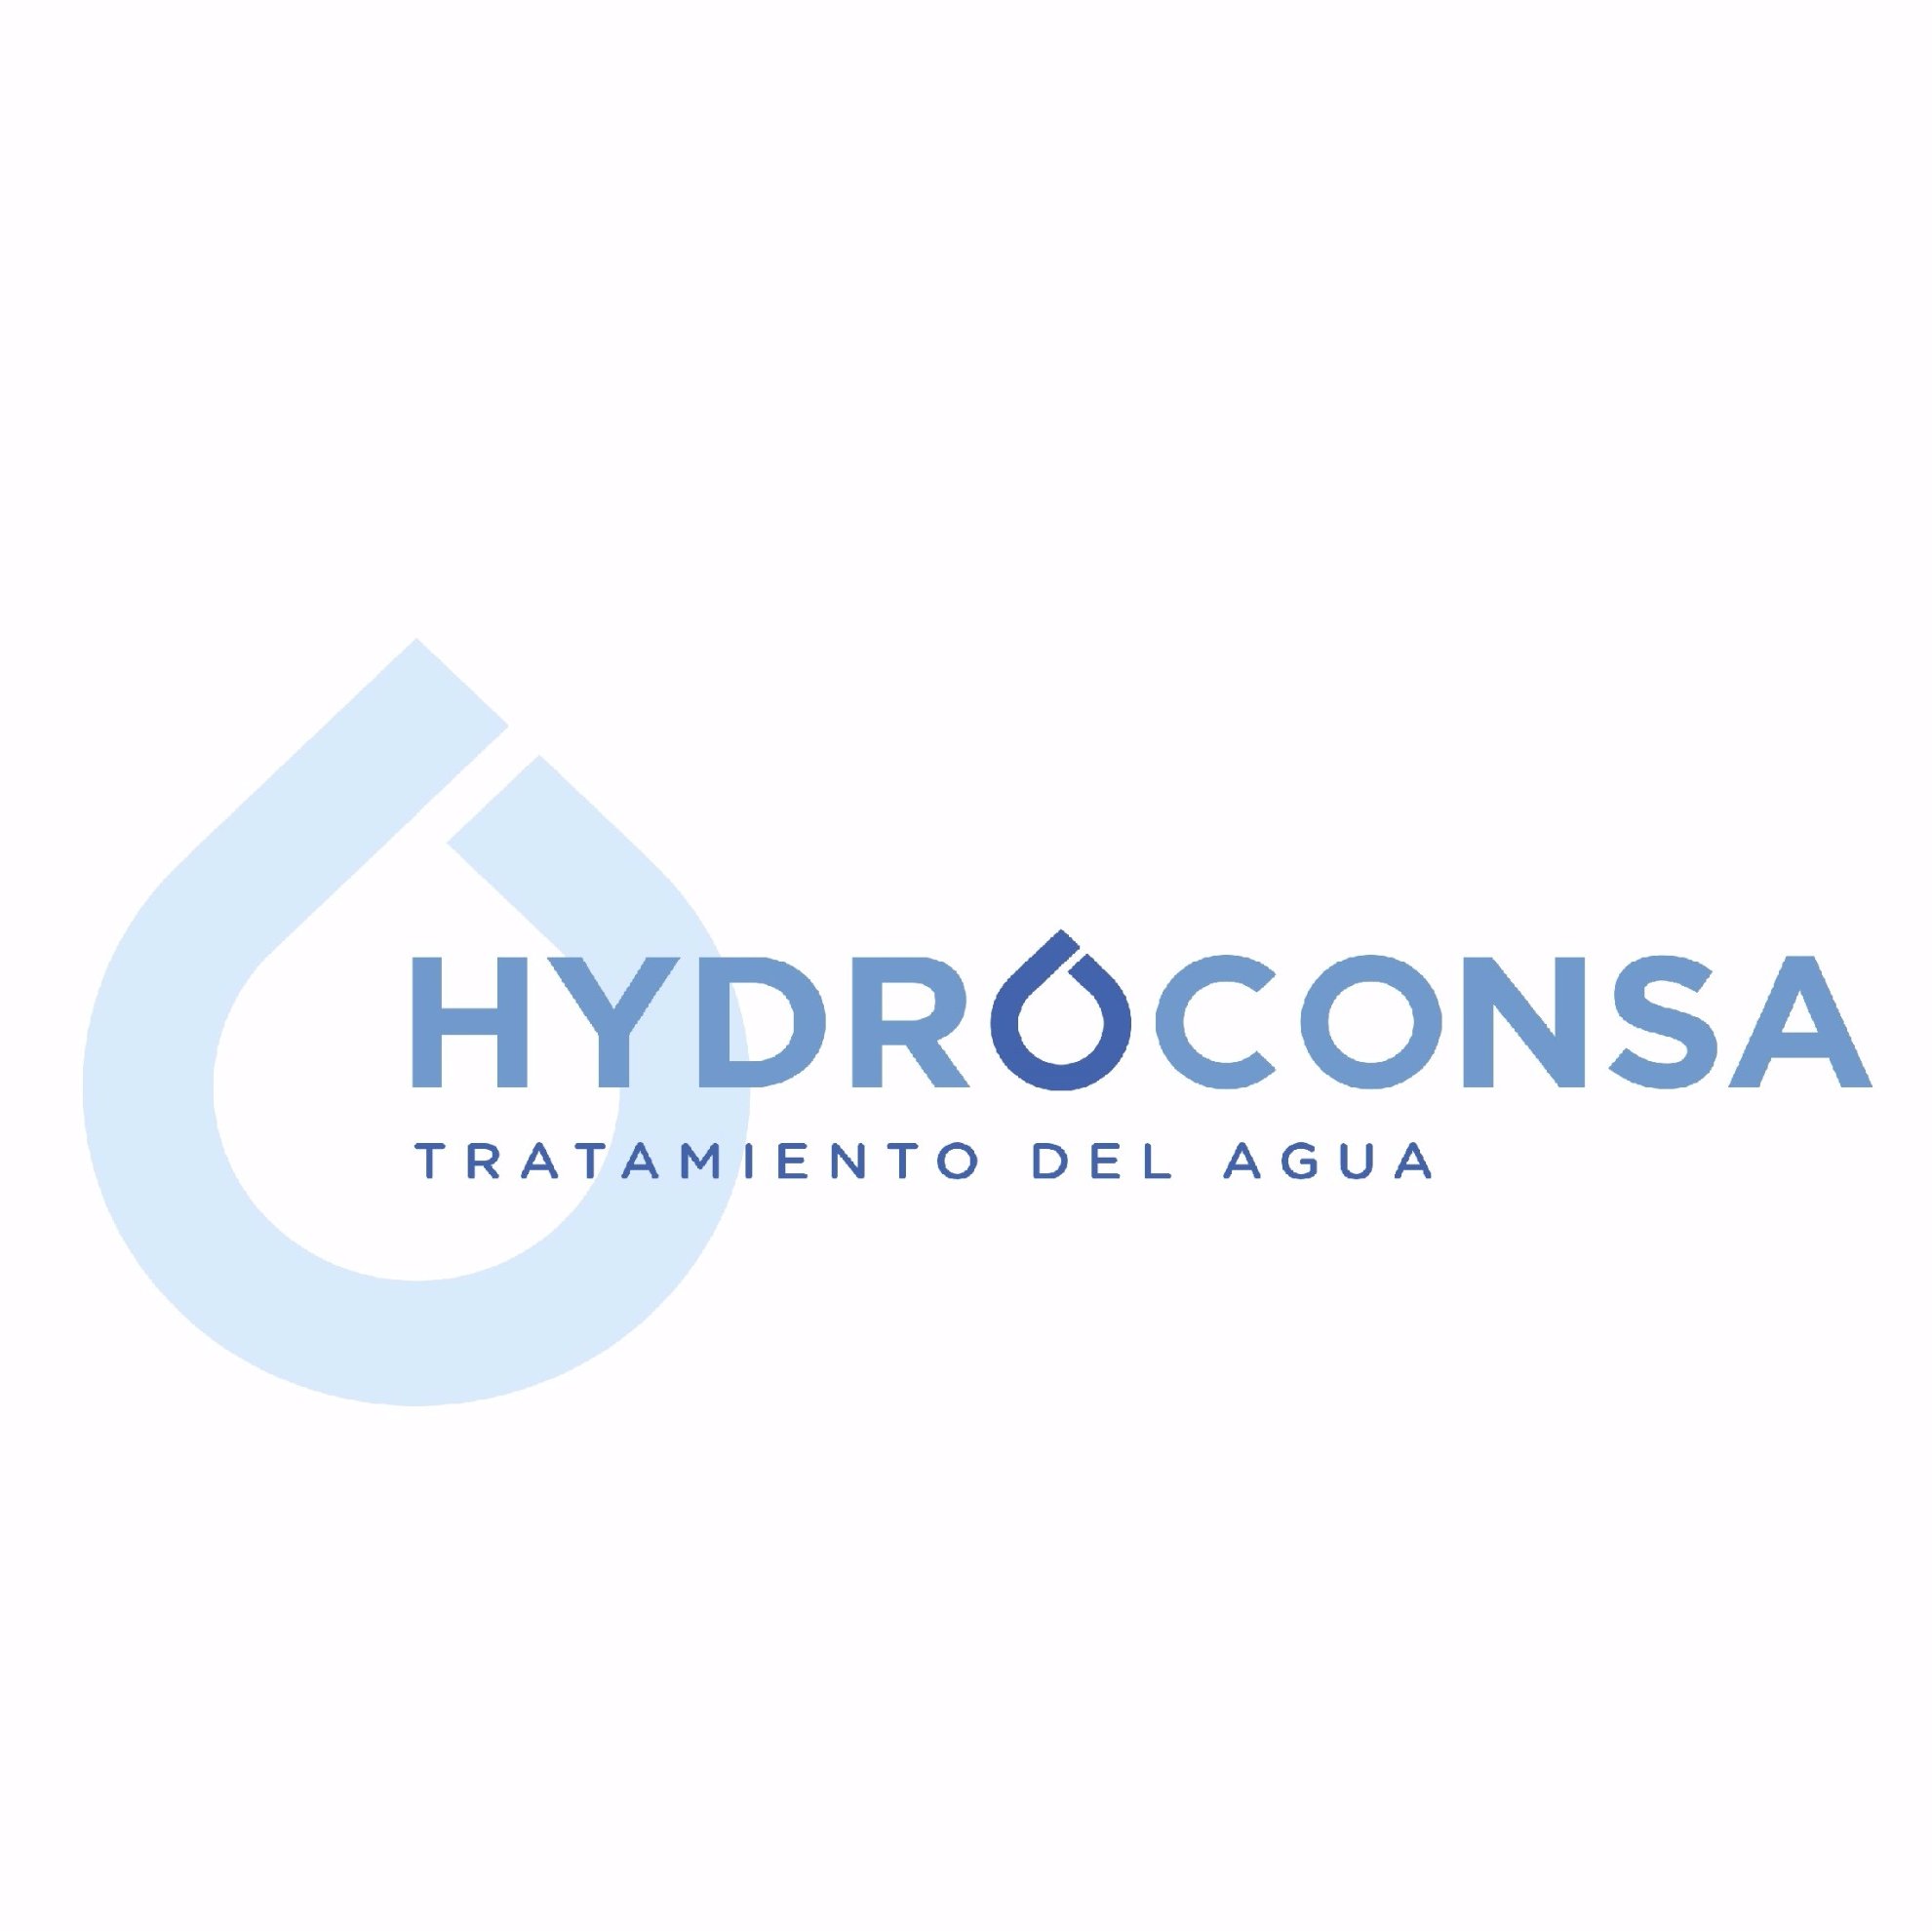 HYDROCONSA es una empresa dedicada íntegramente a la salud y bienestar. https://t.co/m2F50MUjch